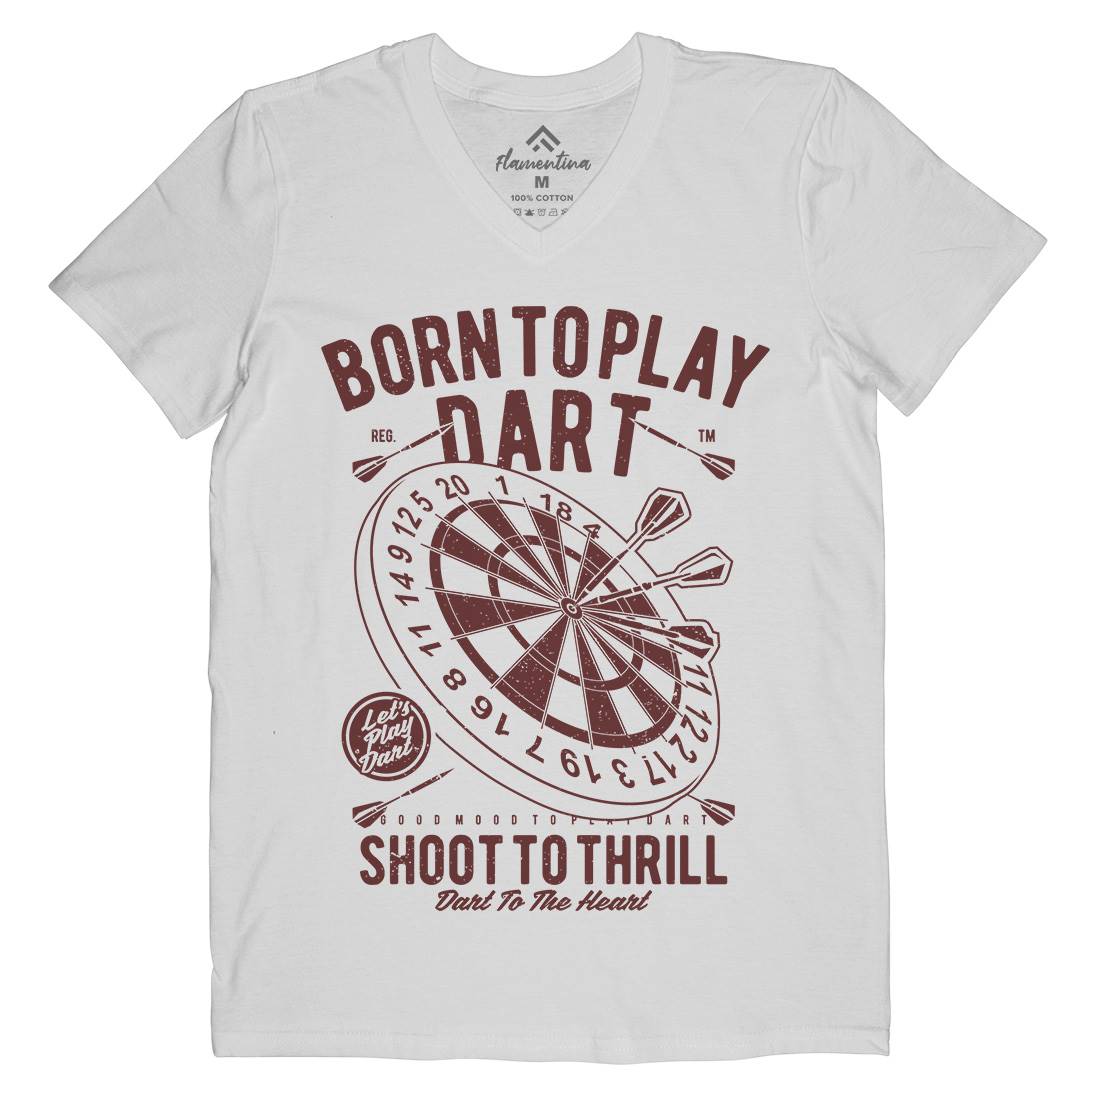 Born To Play Mens Organic V-Neck T-Shirt Sport A622